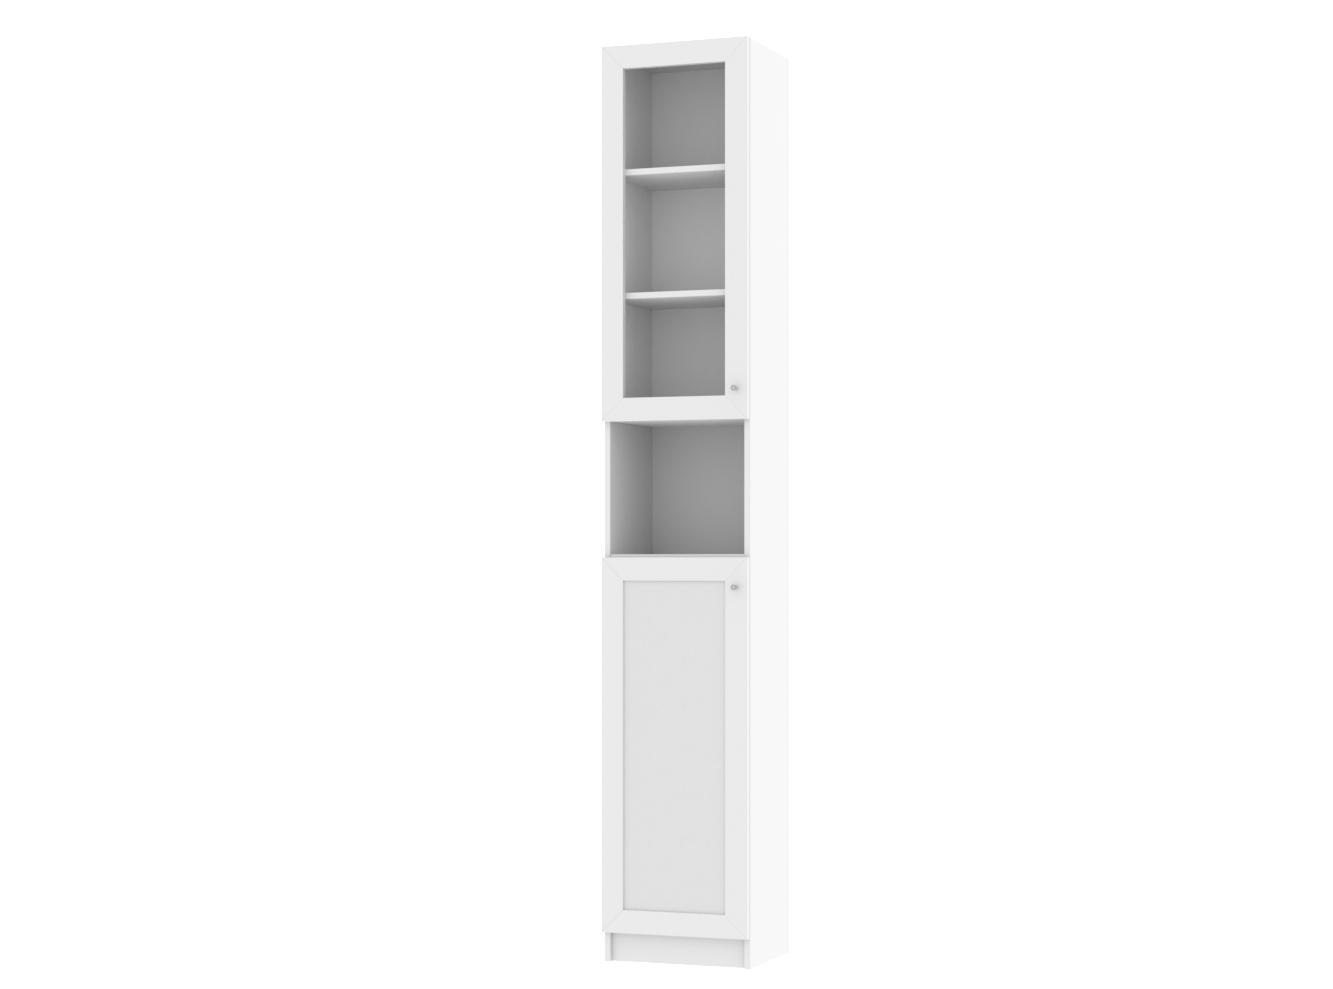 Изображение товара Книжный шкаф Билли 329 white ИКЕА (IKEA), 40x30x237 см на сайте adeta.ru